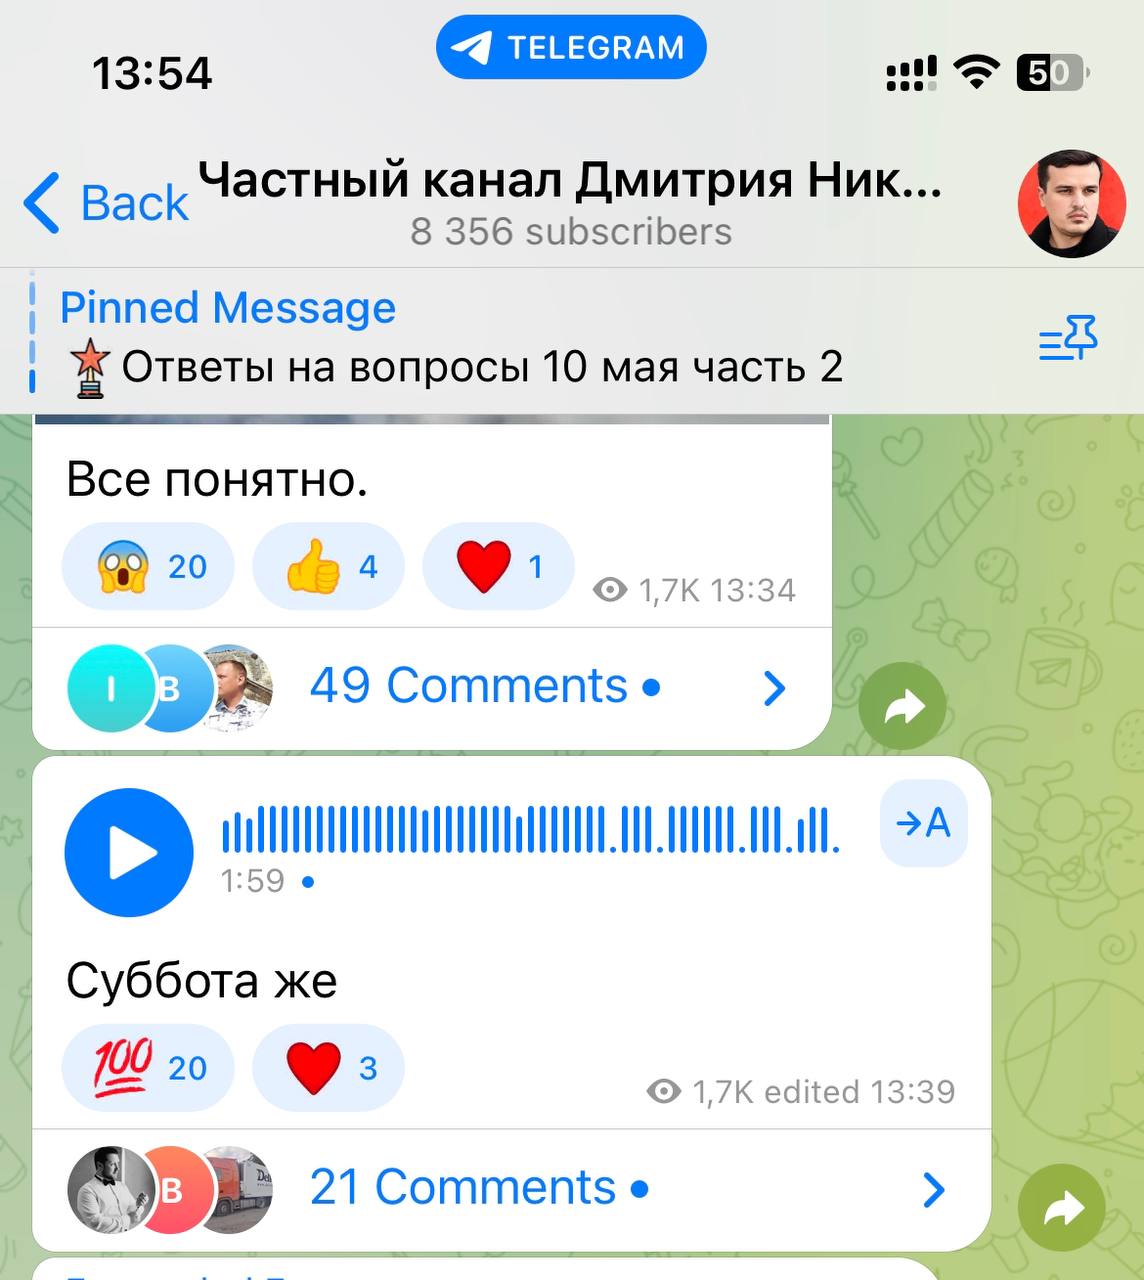 Дмитрий никотин телеграмм последнее видео смотреть бесплатно без регистрации в хорошем качестве фото 56